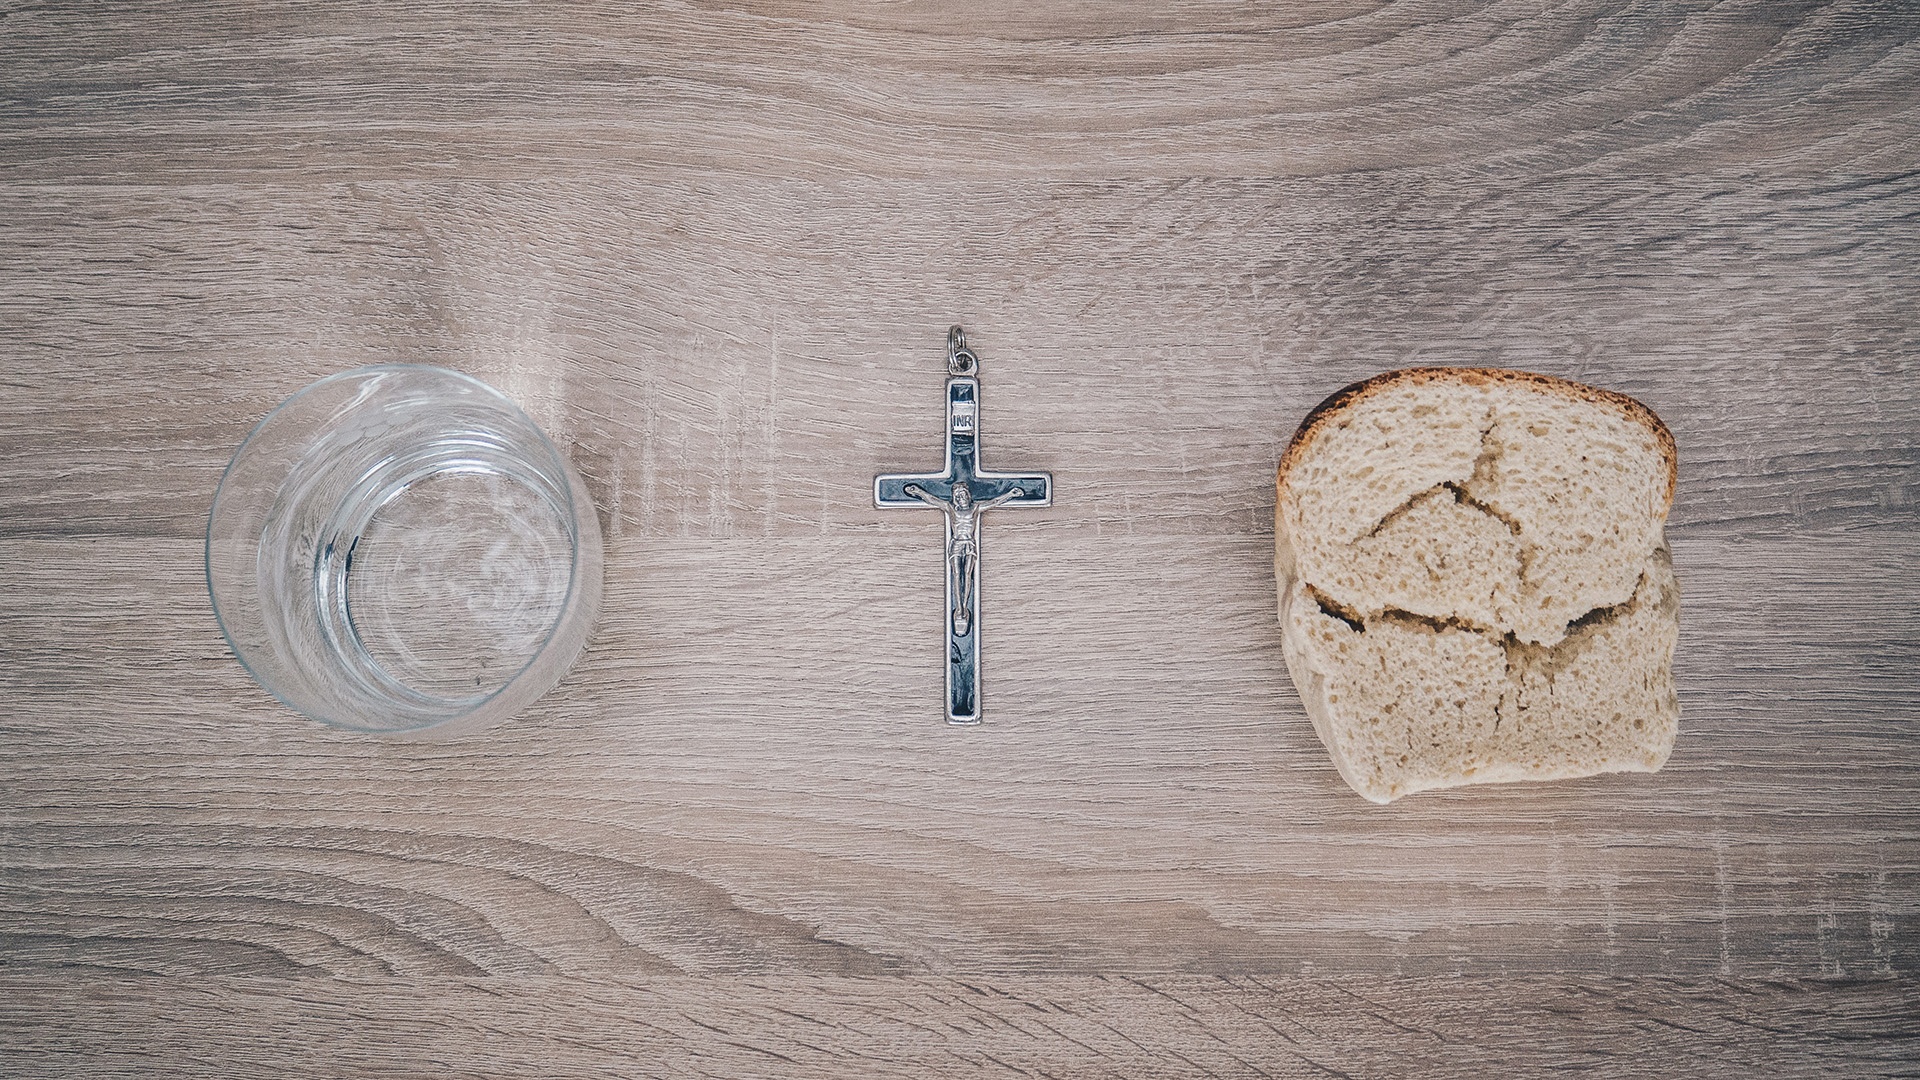 Wasser, Kreuz und Brot liegen auf einem Tisch